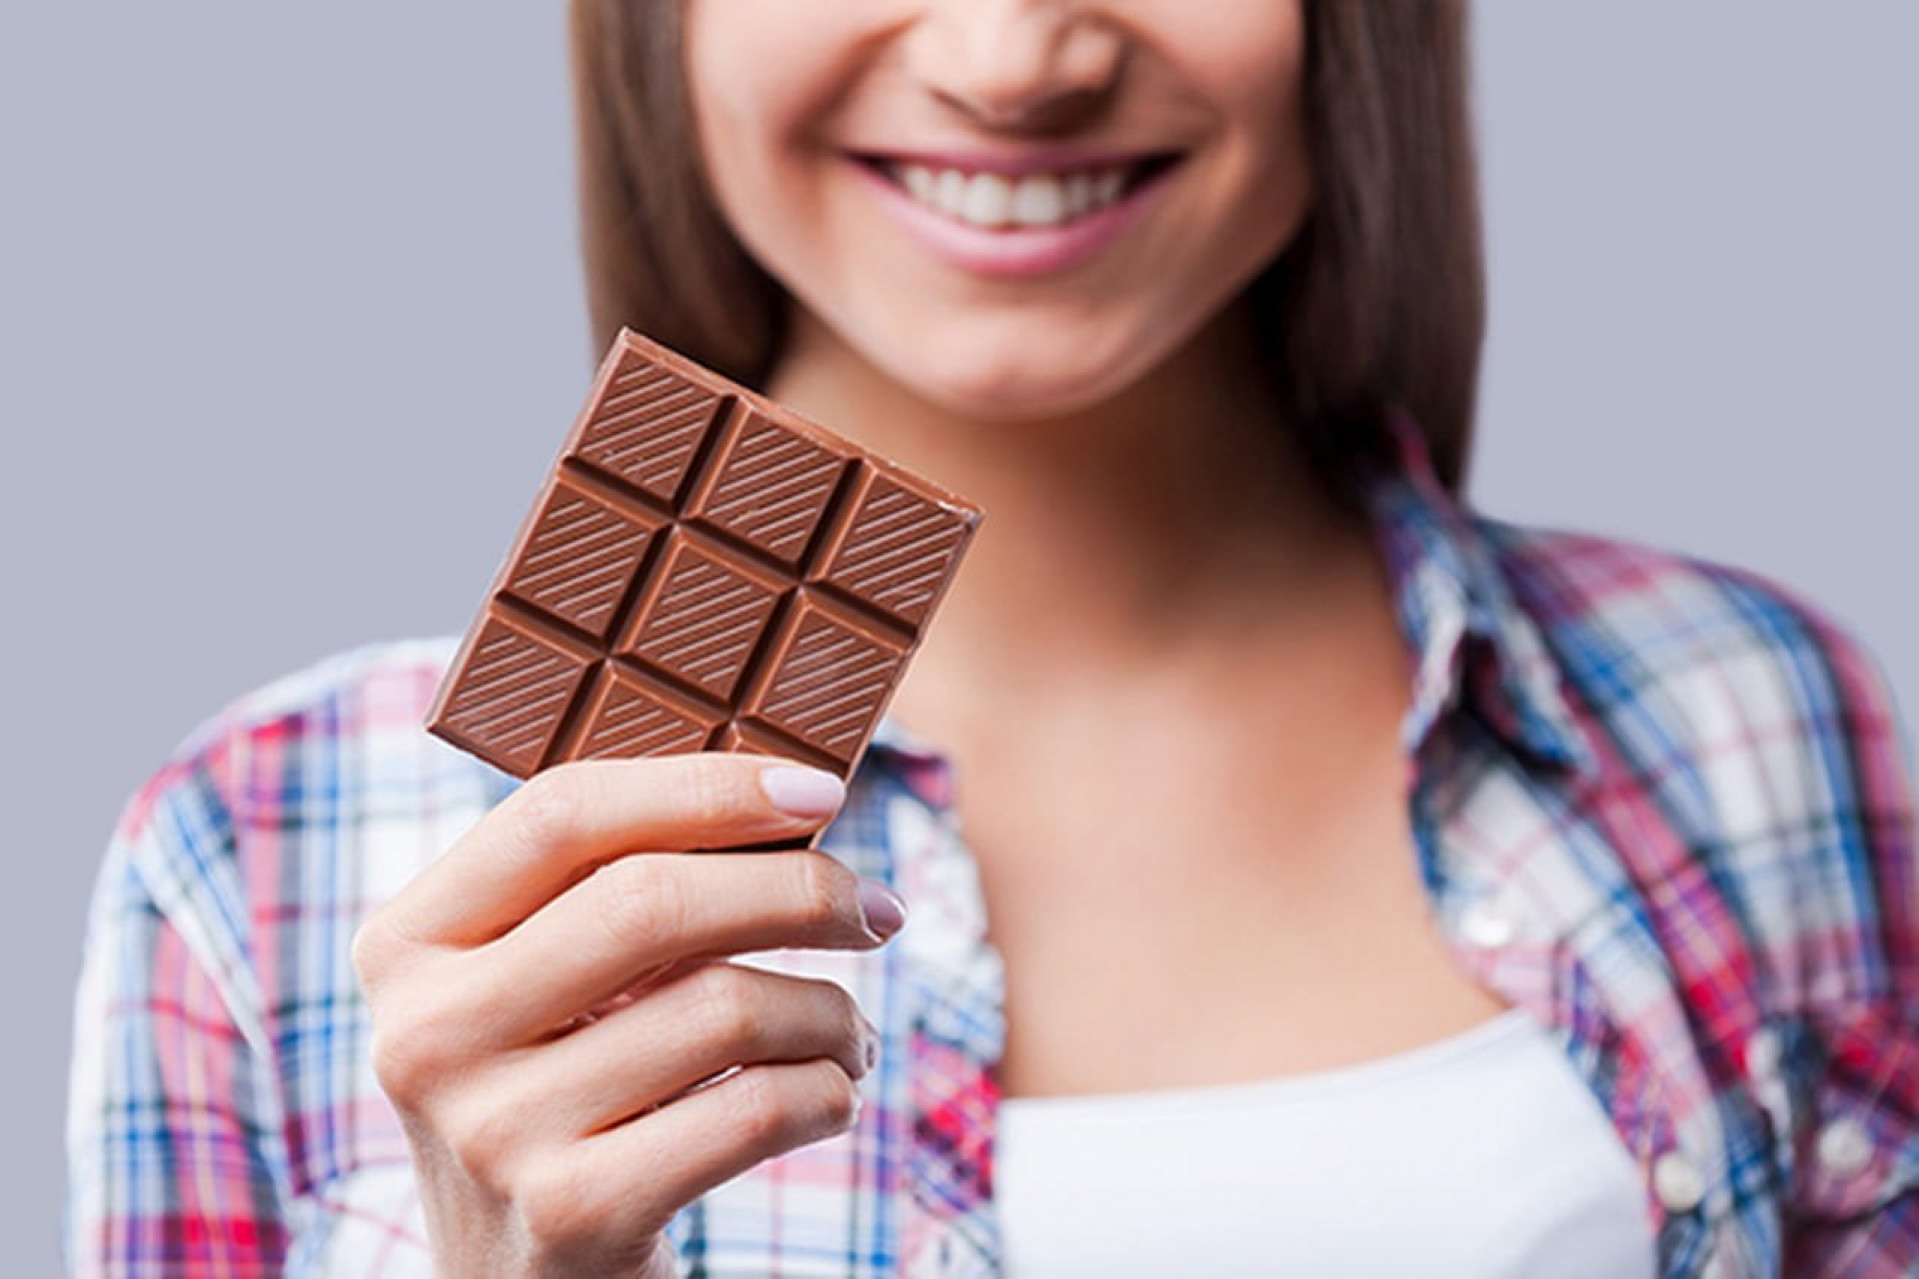 Шоколадки берите. Необычный шоколад. Плитка шоколада в руке. Шоколадка в руке. Шоколадка в руке девушки.